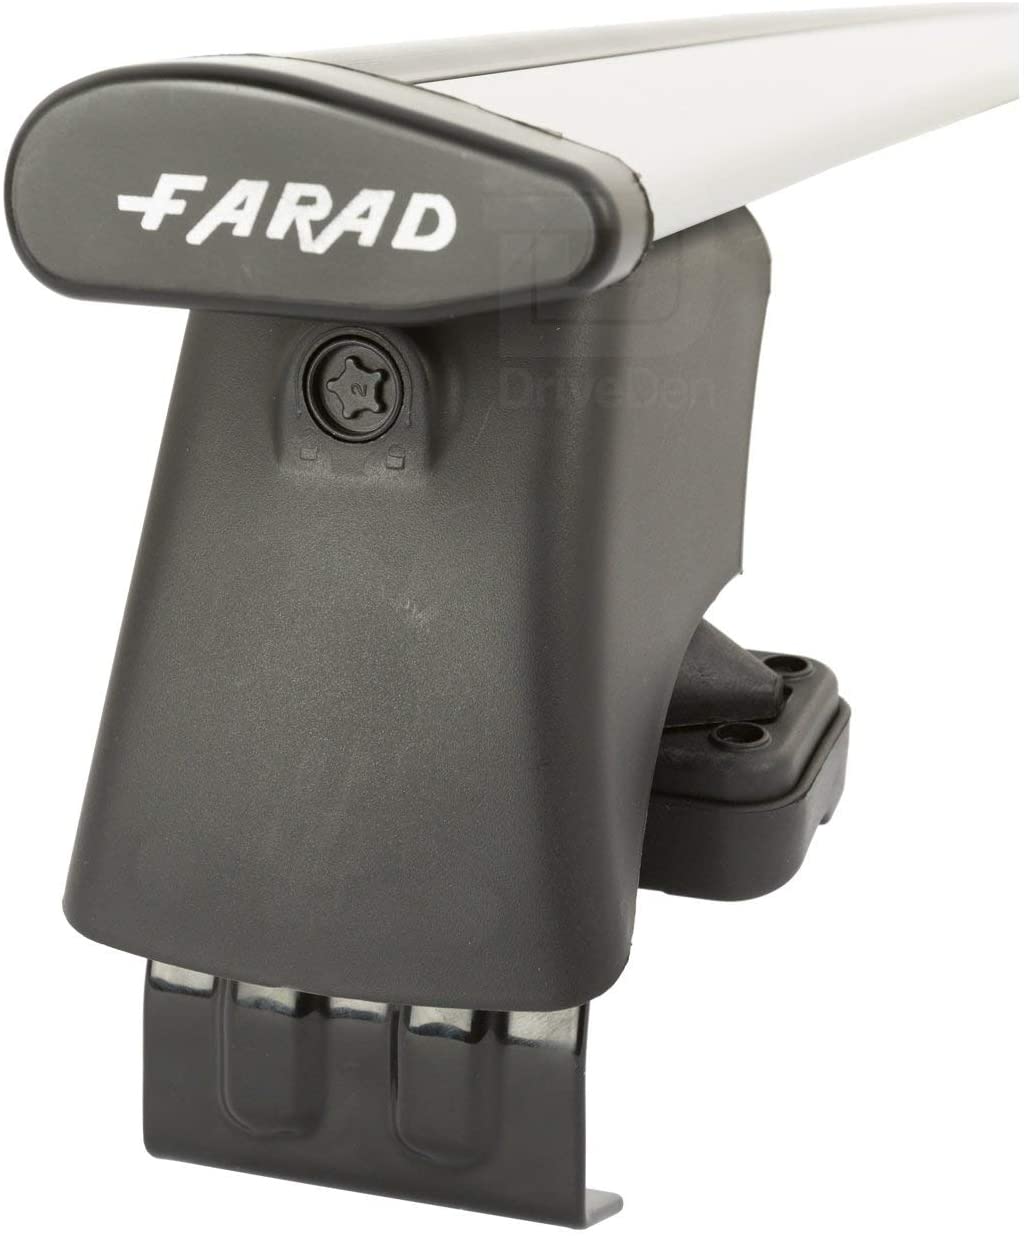 FARAD-Kit H2 per barre portatutto - Alfa Romeo 159 2005-2011 (senza corrimano)